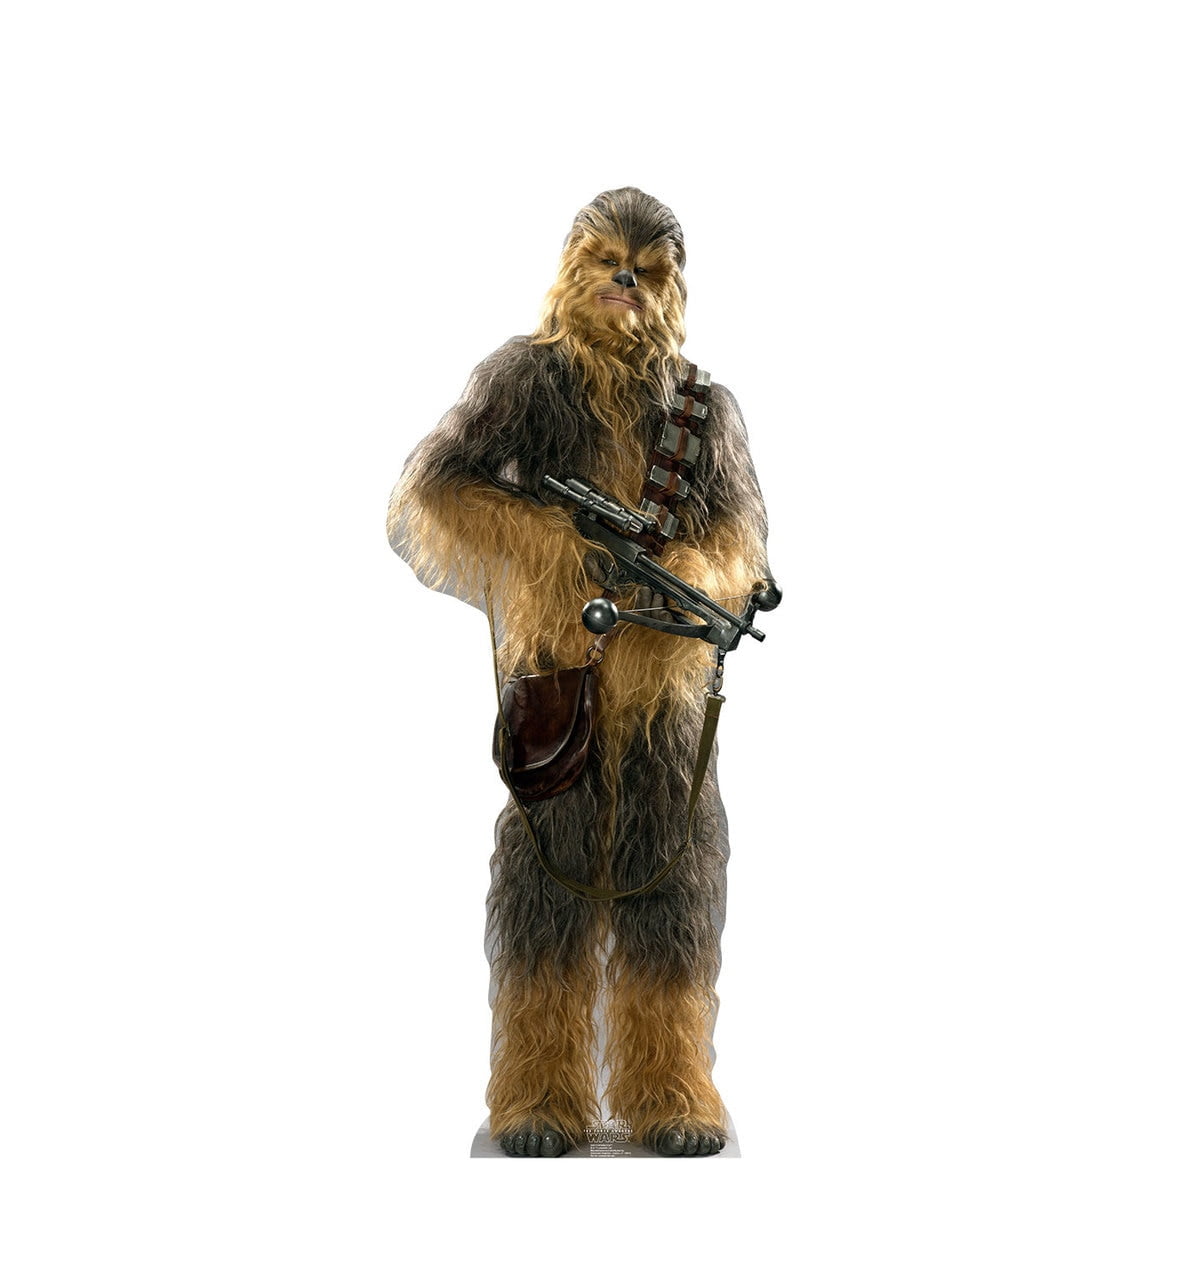 88 x 36 in. Chewbacca Cardboard Cutout, Star Wars VII - The Force Awakens -  GiftsGoneWild, GI2746682